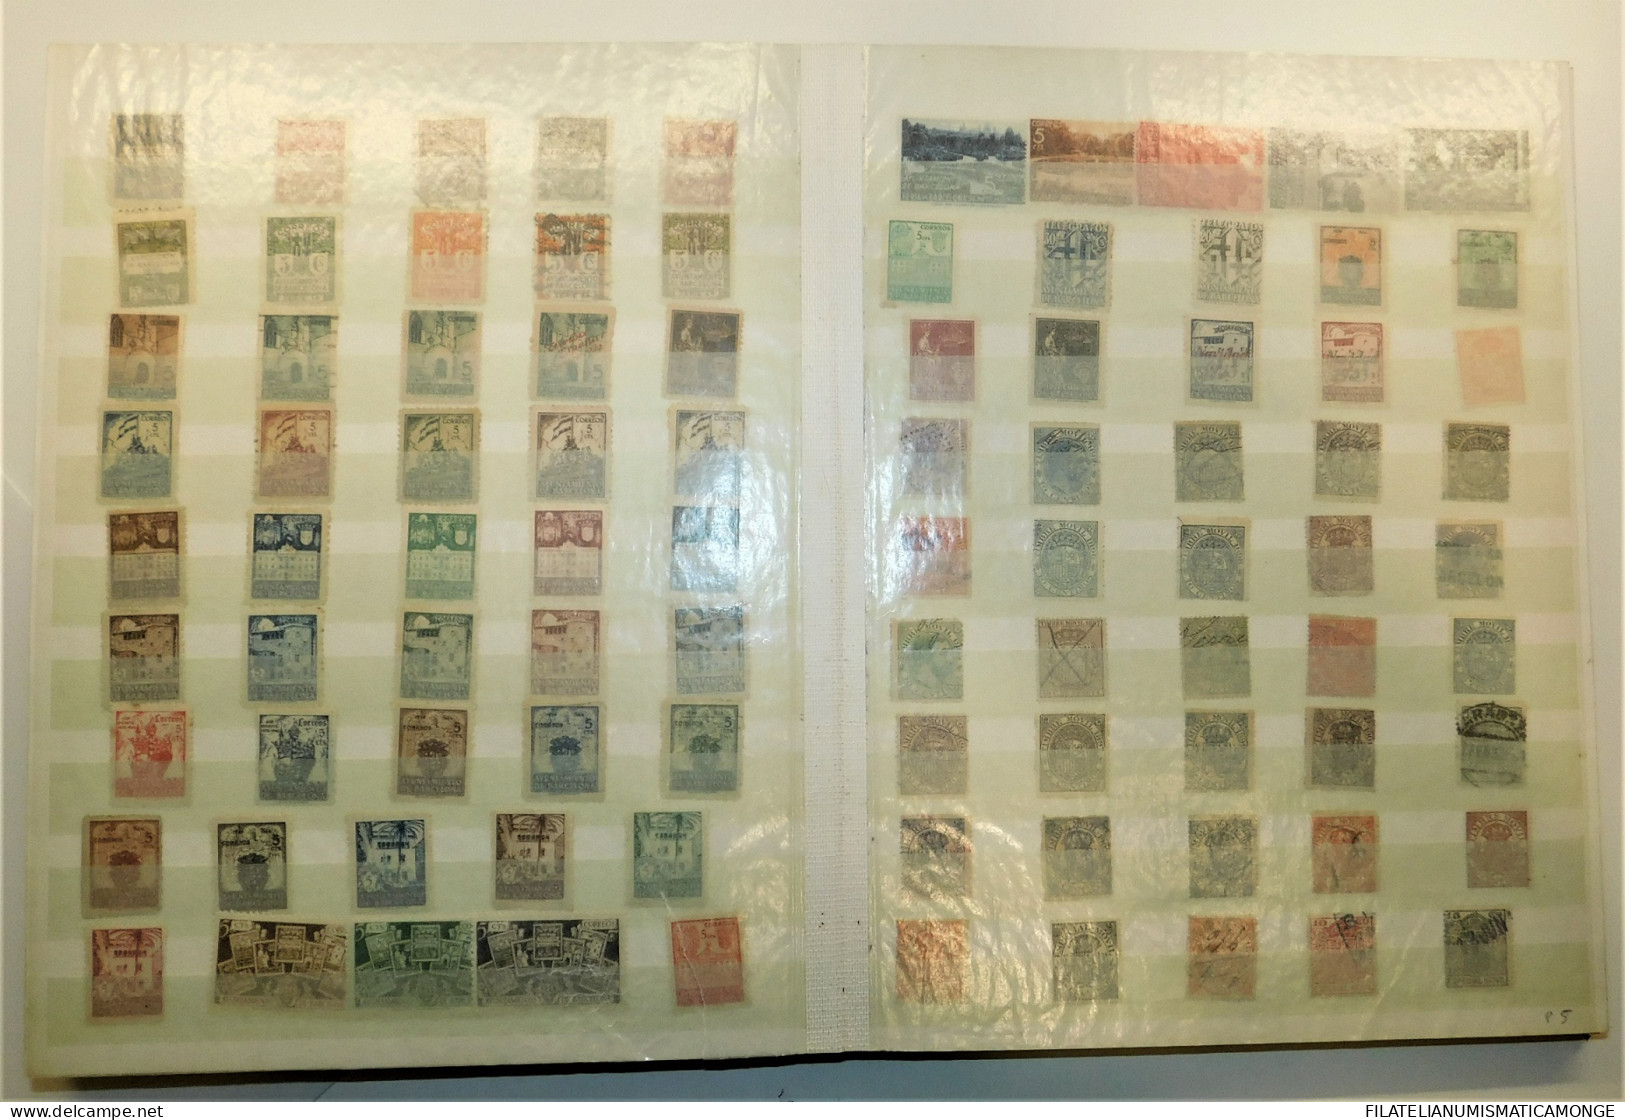  Offer - Lot Stamps - Paqueteria  España / 1er Centenario 1901-49 1000 sellos d